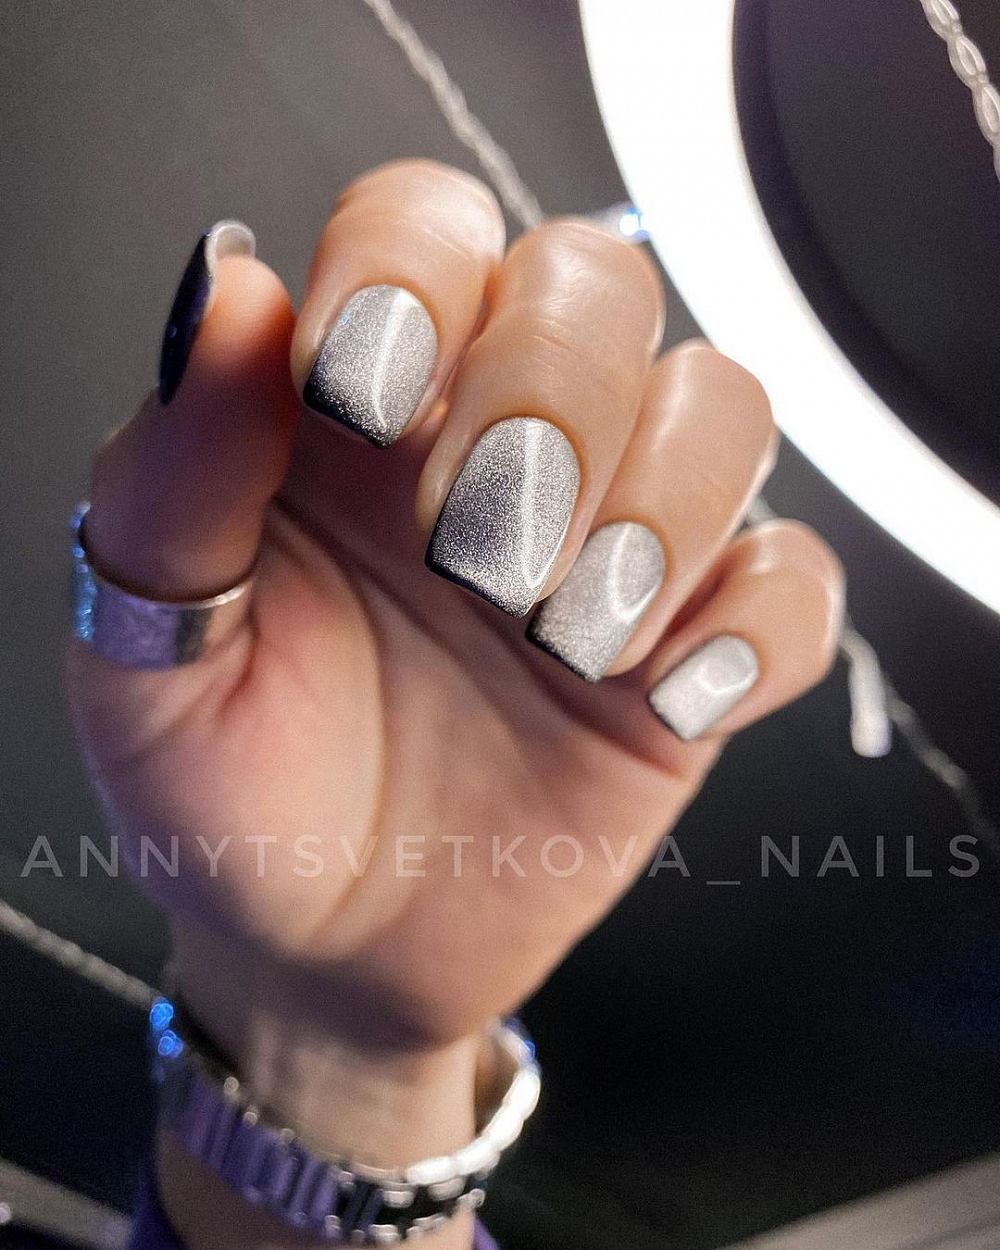 Мастер: @annytsvetkova_nails (https://www.instagram.com/annytsvetkova_nails/)